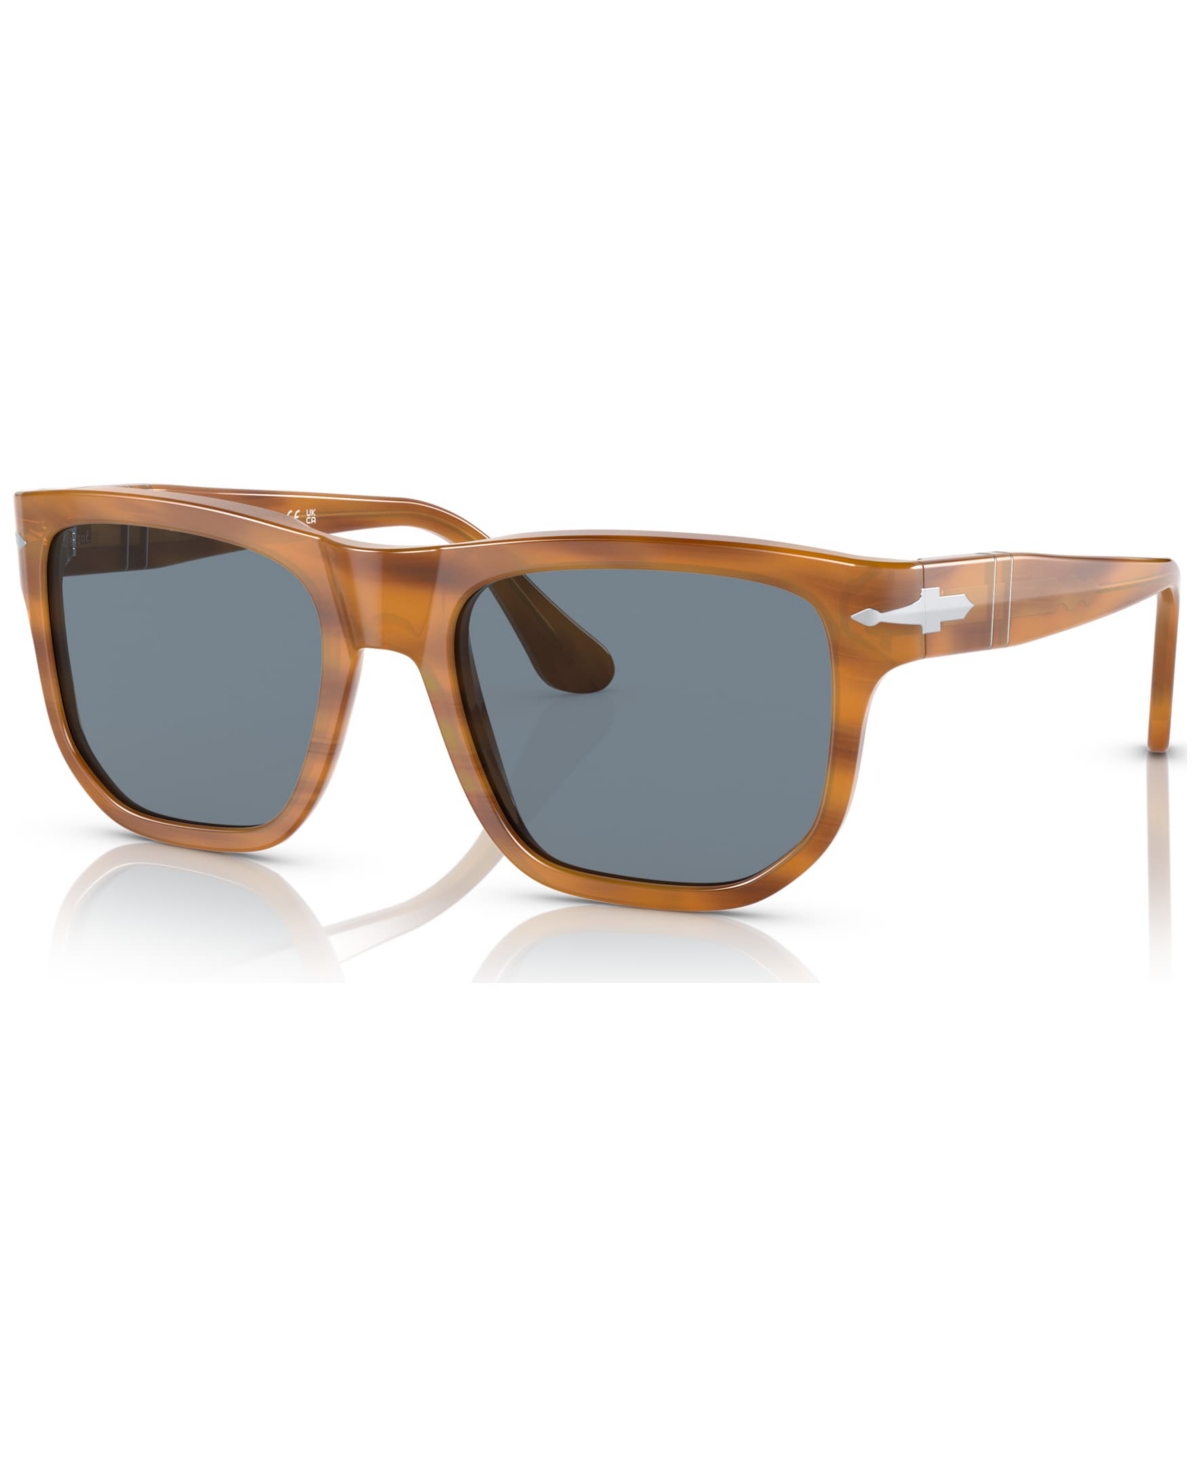 Persol Unisex Sunglasses, 0po3306s9605655w In Striped Brown